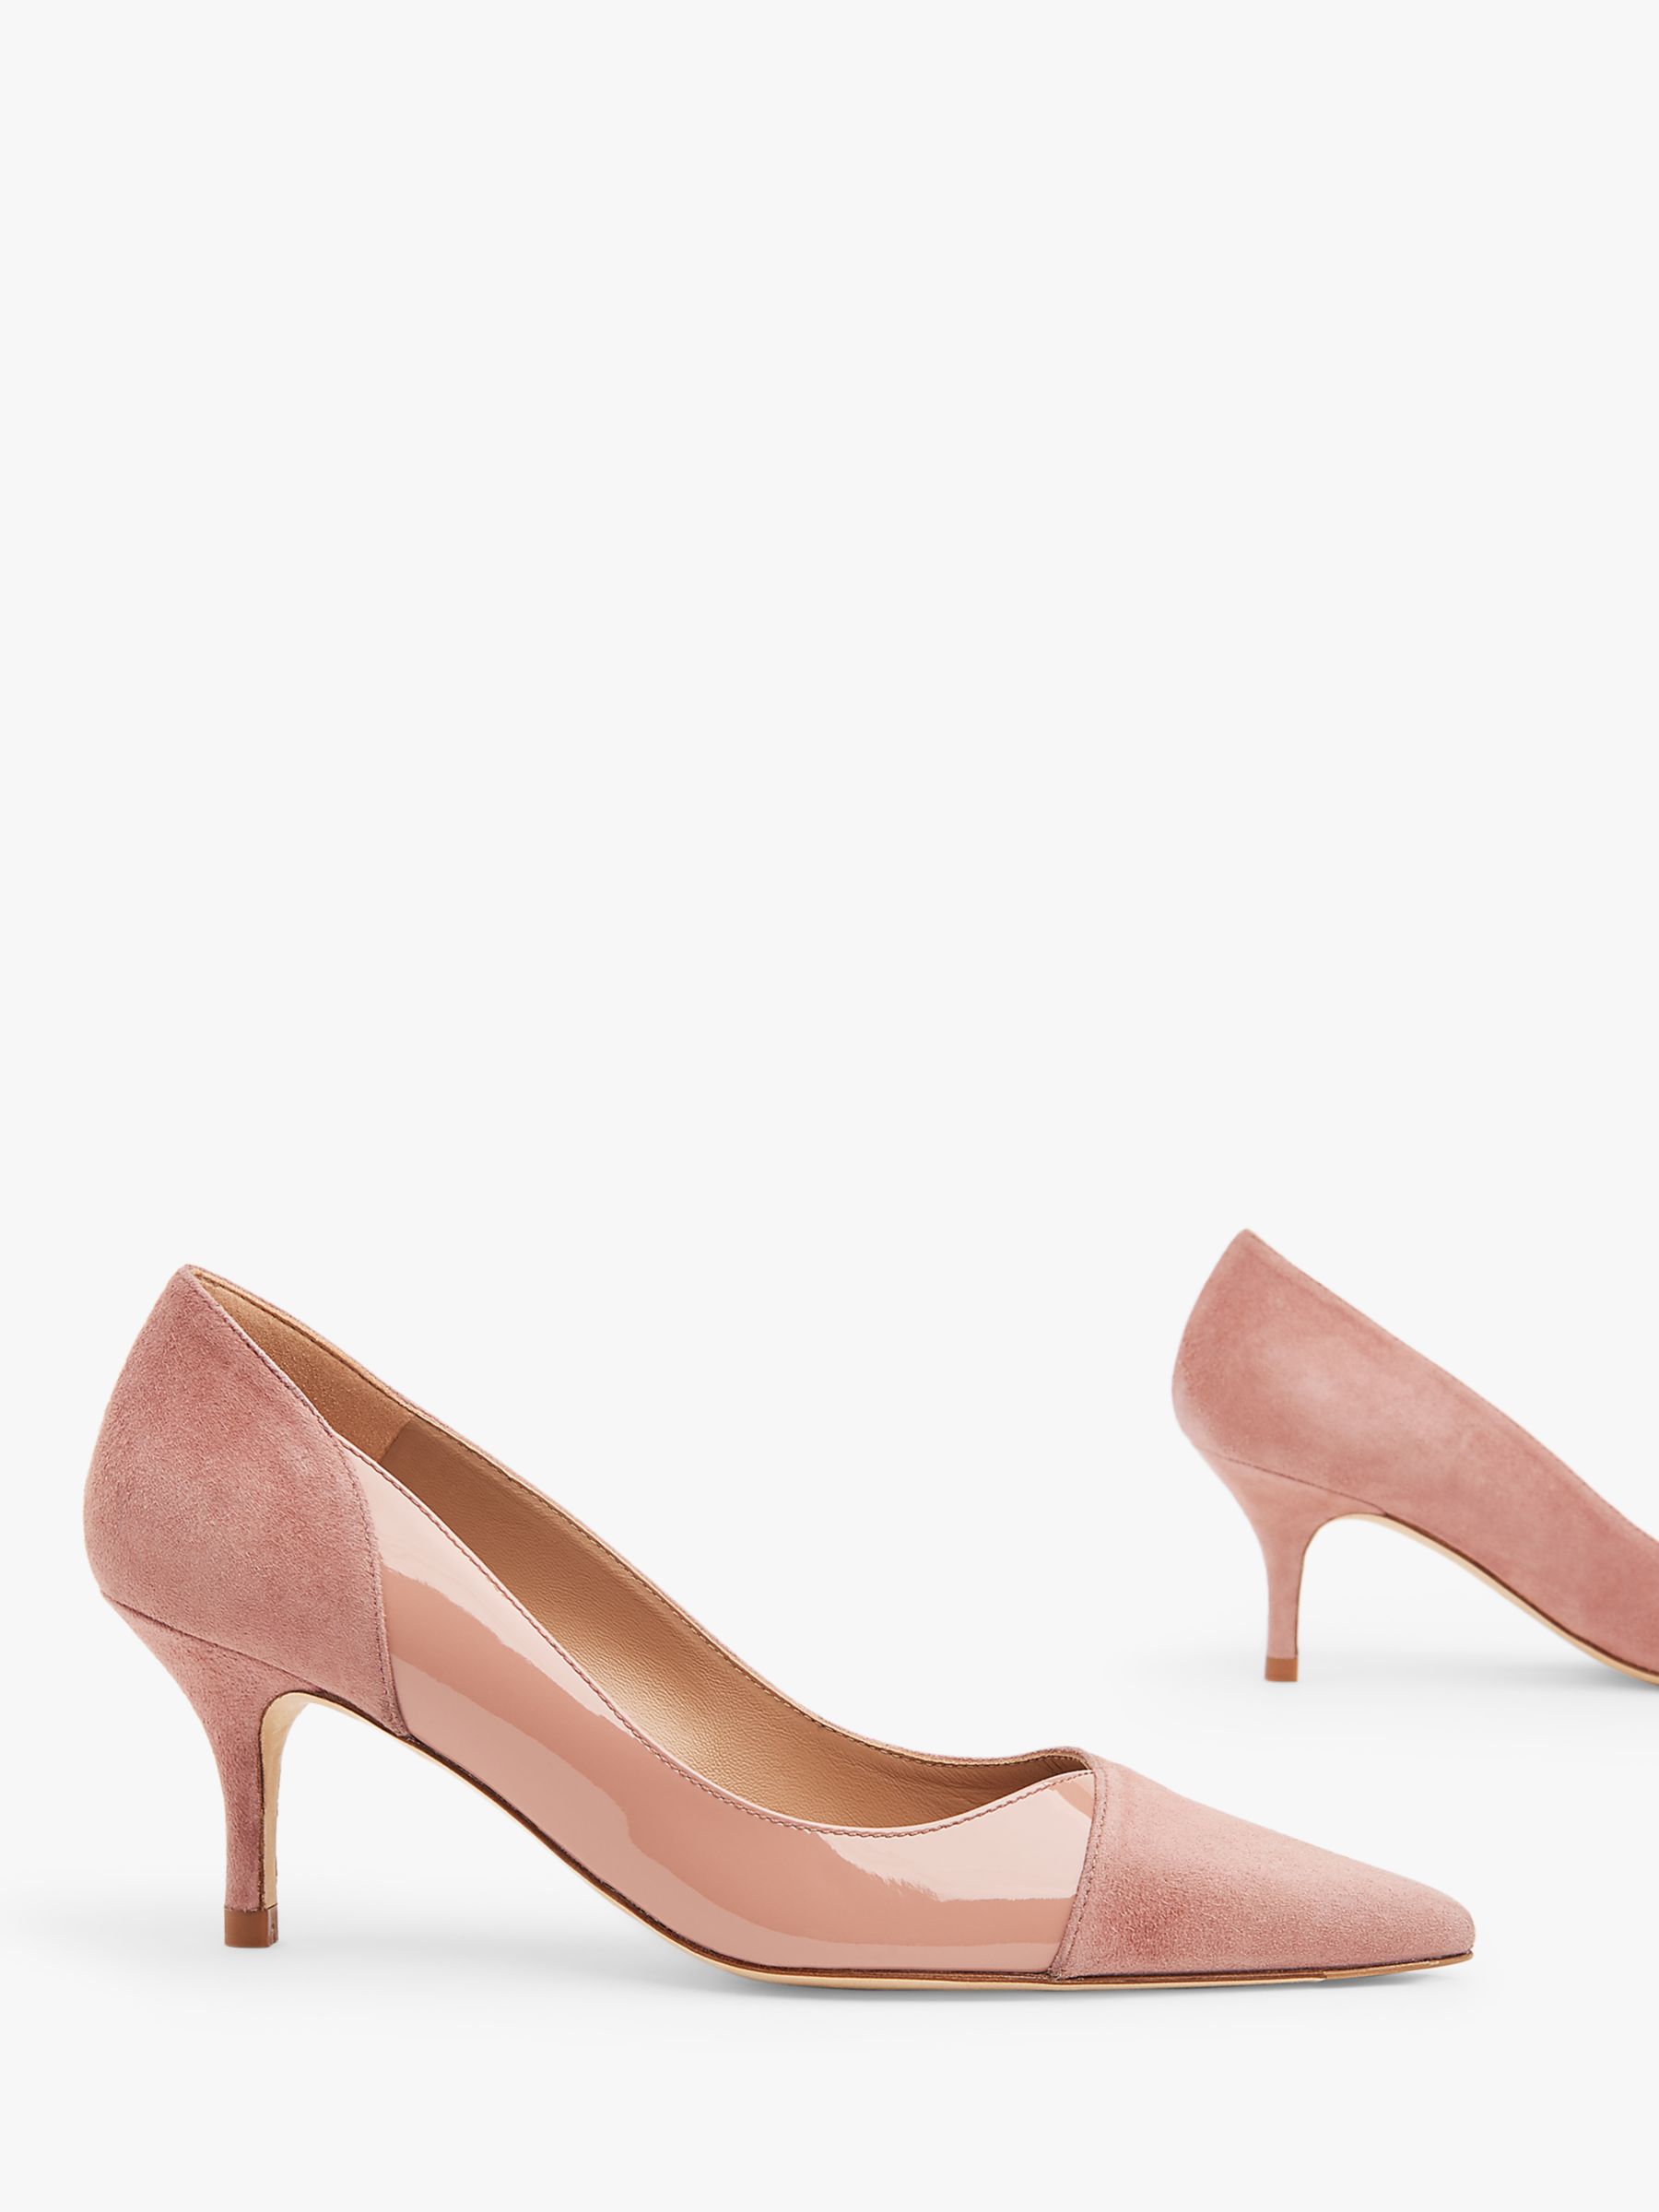 lk bennett pink court shoes